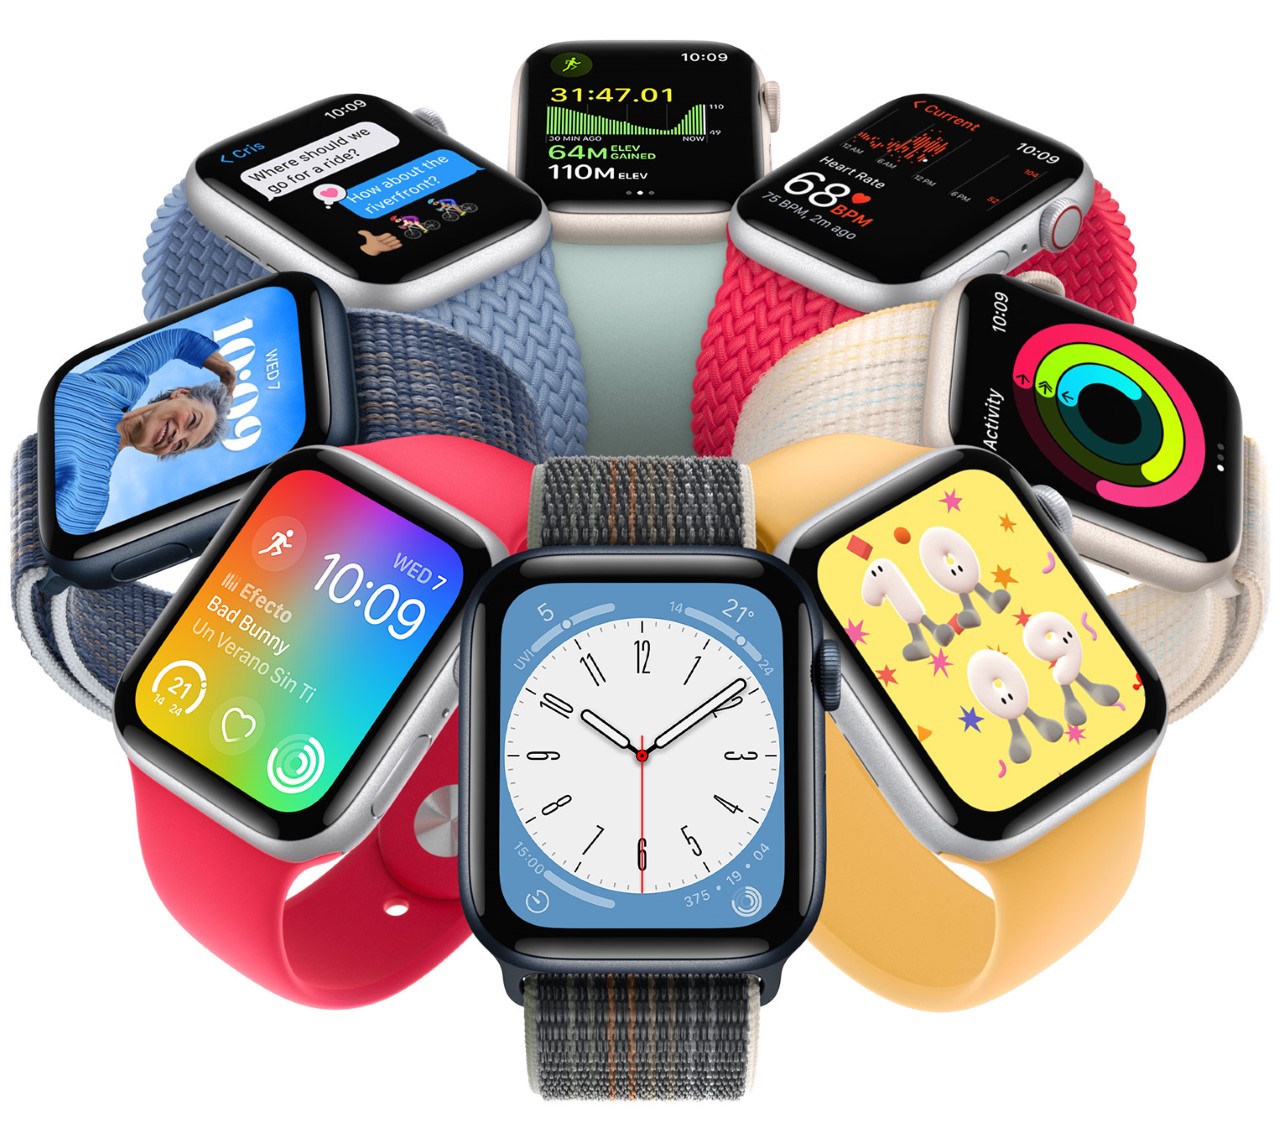 Τα νέα iPhone 14 & iPhone 14 Plus, τα iPhone 14 Pro & iPhone 14 Pro Max, τα νέα ρολόγια Apple Watch Ultra, Apple Watch Series 8 & Apple Watch SE, αλλά και τα ασύρματα ηχεία AirPods Pro 2ης γενιάς, φέρνουν σύντομα στην Ελλάδα η COSMOTE και ο ΓΕΡΜΑΝΟΣ. Οι ενδιαφερόμενοι μπορούν να δηλώσουν ήδη ενδιαφέρον στο www.germanos.gr για τις νέες συσκευές της Apple και να είναι από τους πρώτους που θα ενημερωθούν όταν ξεκινήσουν οι προ-παραγγελίες. Για τα iPhone 14|14 Plus και iPhone 14 Pro|14 Pro Max δείτε εδώ και για